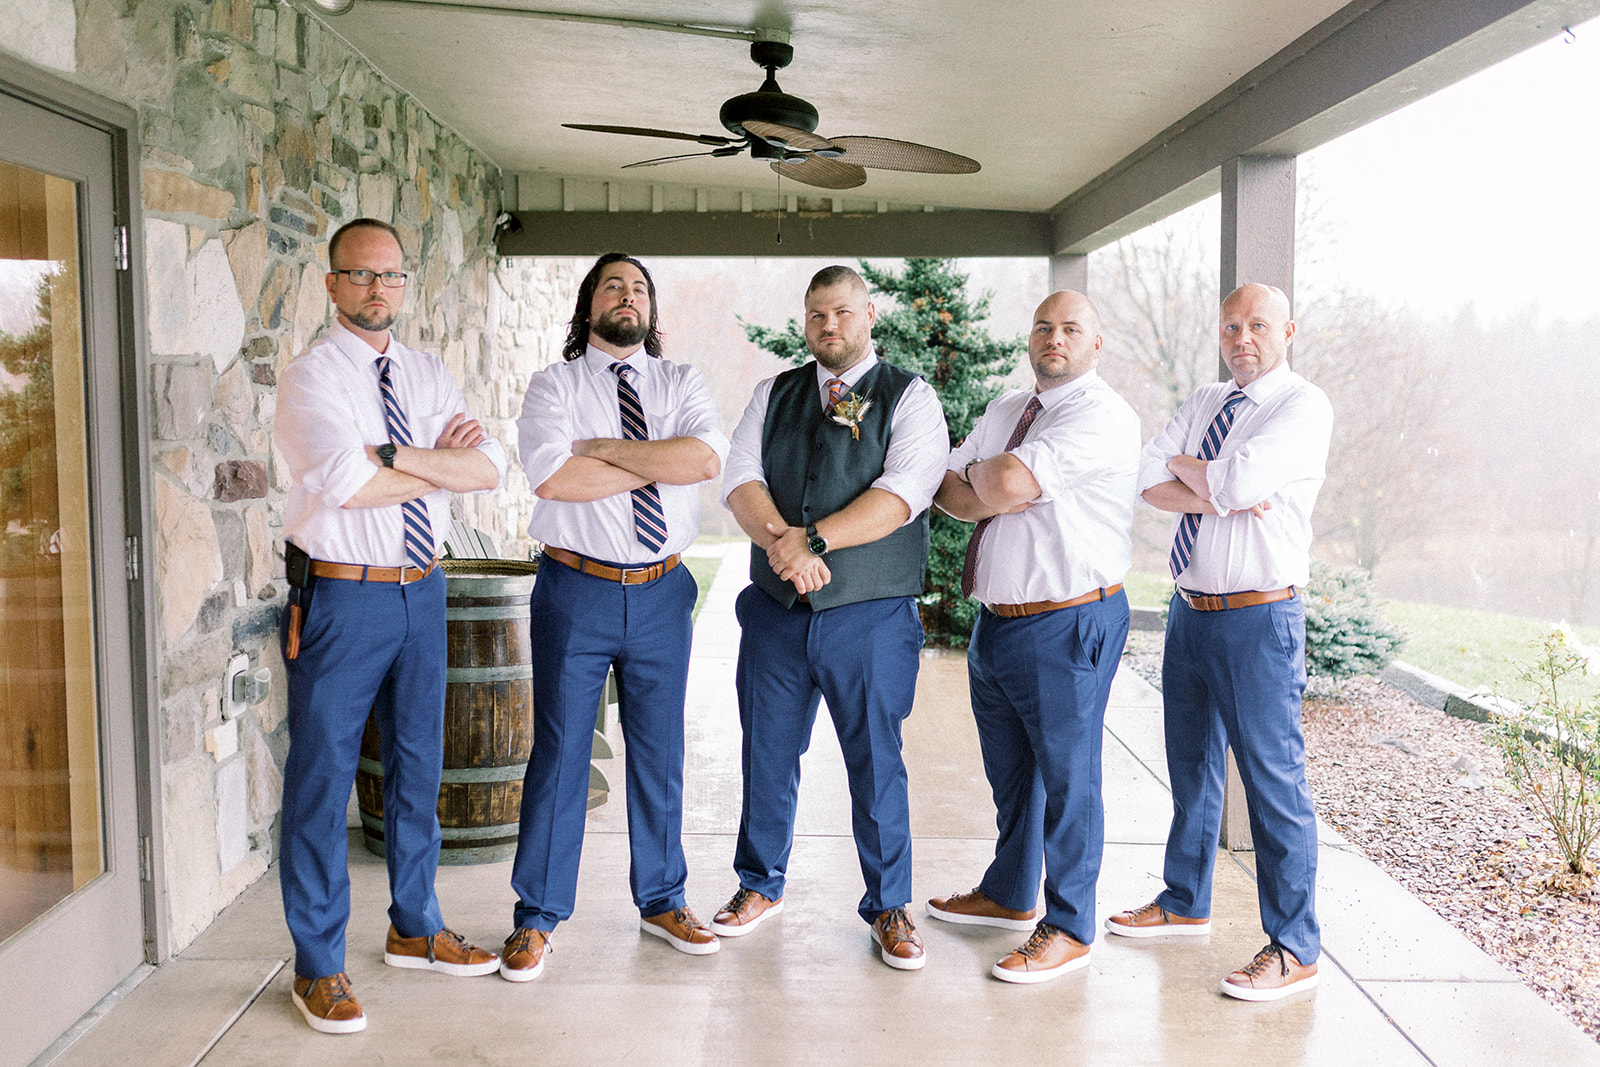 Pennsylvania wedding photographer captures groom standing with groomsmen